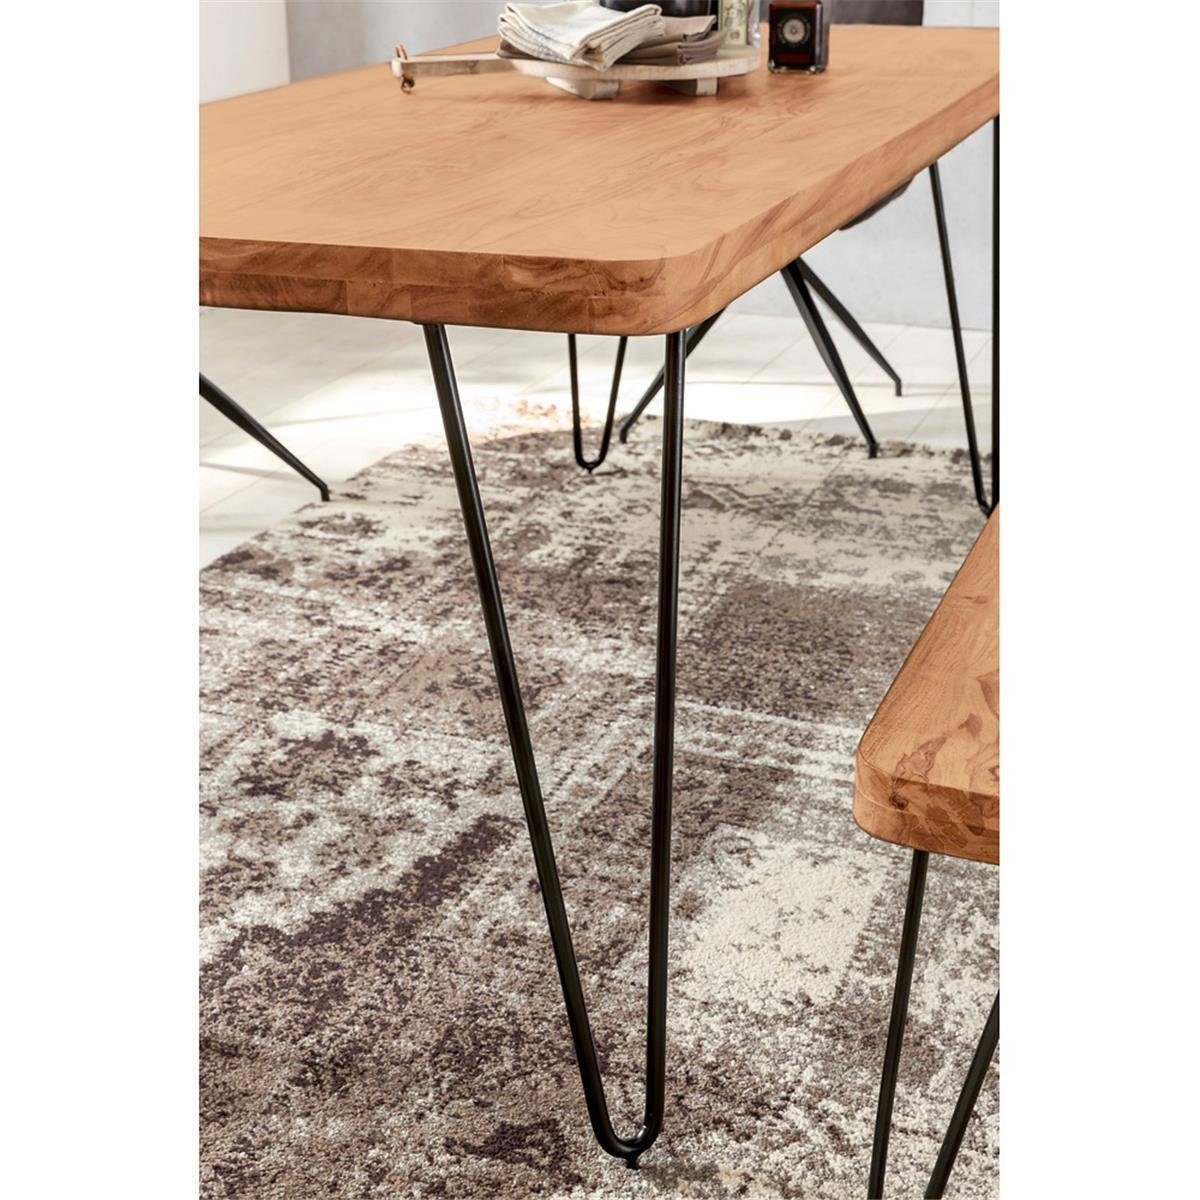 Lomadox Esstisch, Esszimmer-Tisch 180/76/80cm Holztisch mit Metallbeinen Landhaus-Stil